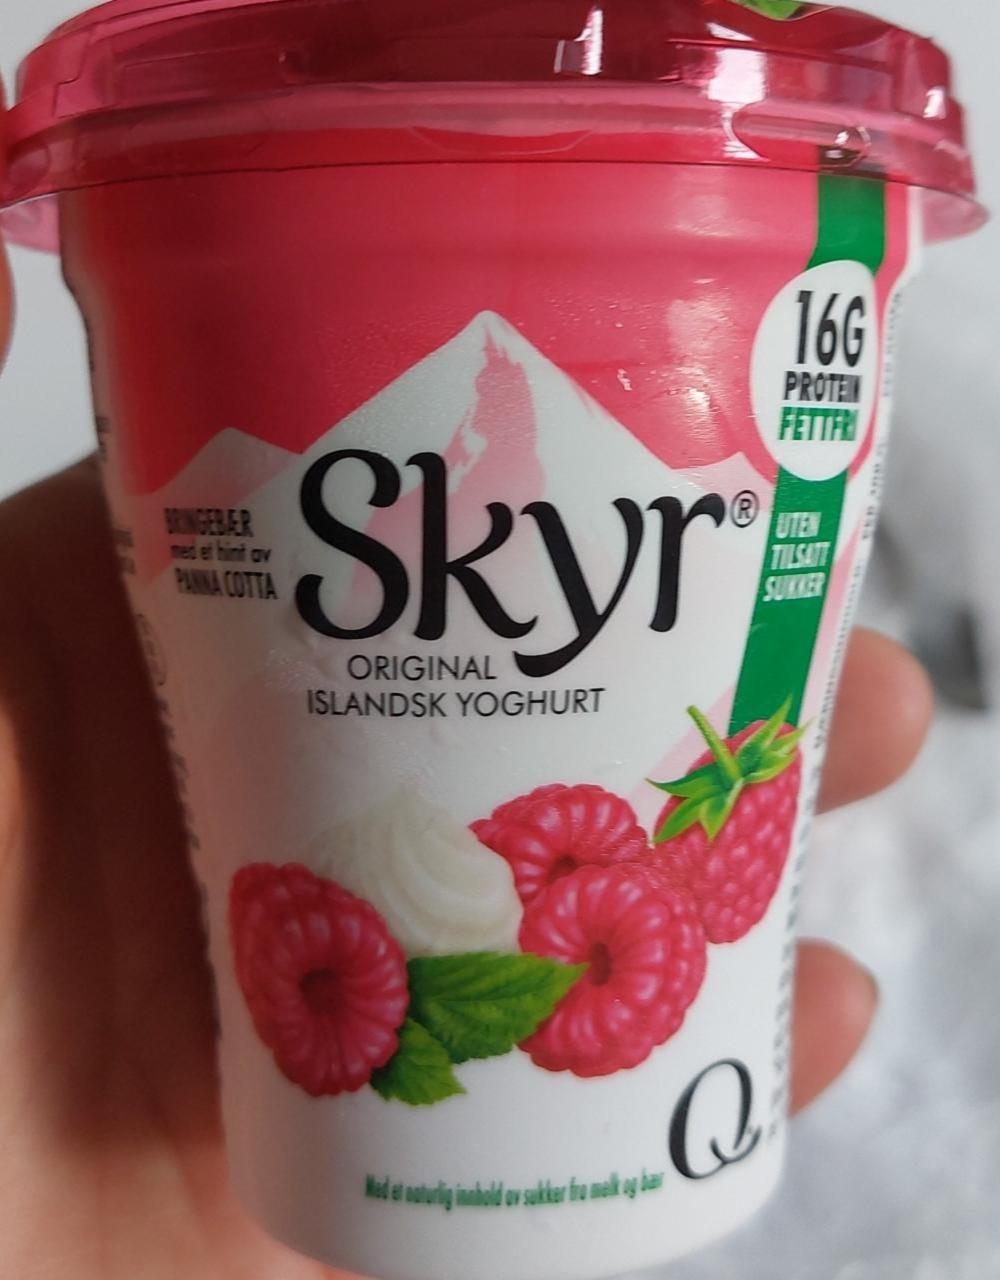 Fotografie - Original Island Yoghurt Bringebær Panna Cotta Skyr